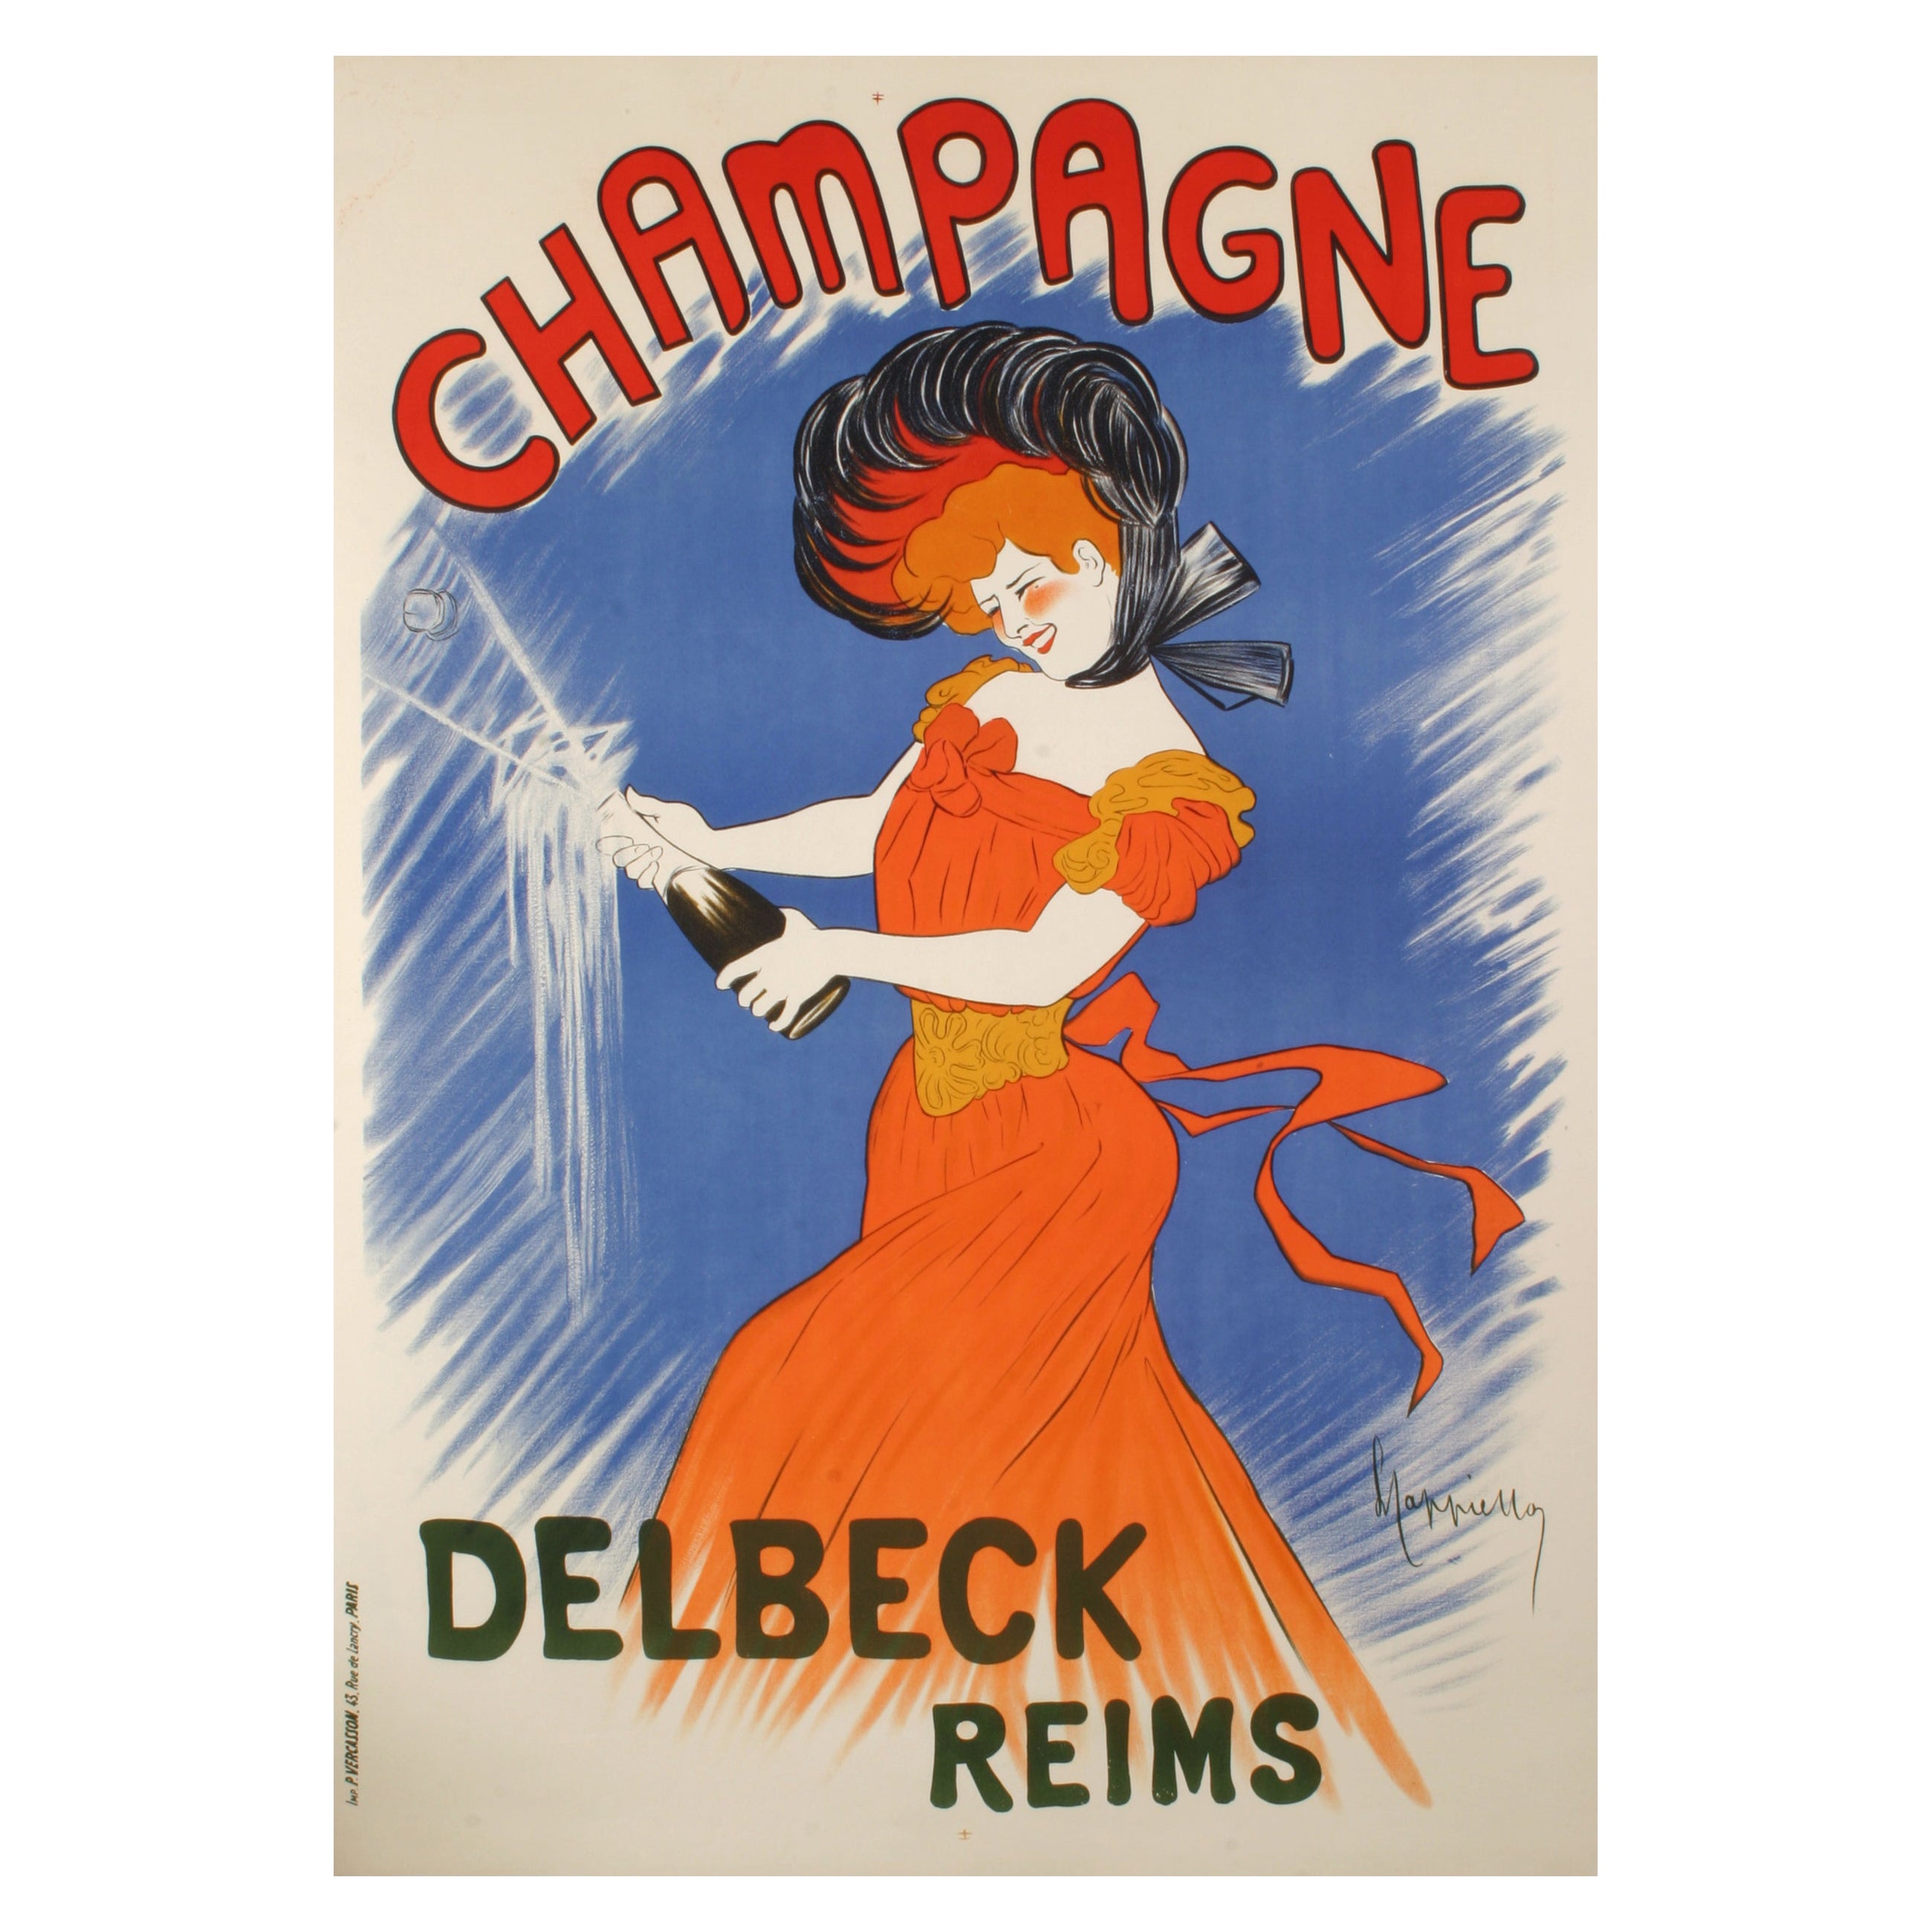 Original-Vintage-Poster von Leonetto Cappiello, Champagner, Delbeck, Reims, 1902